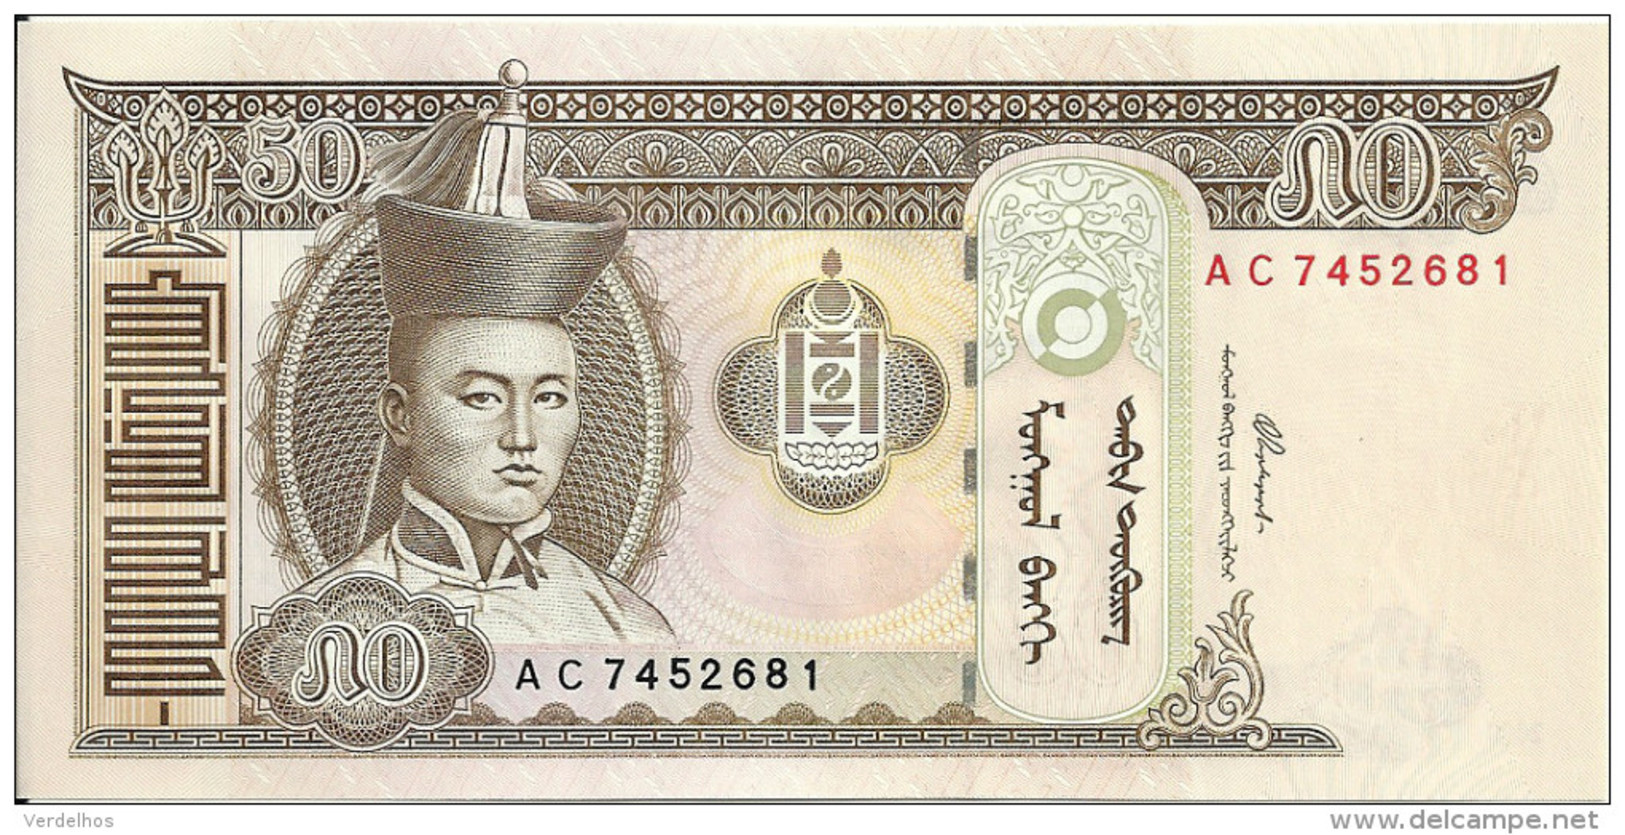 MONGOLIE 50 TUGRIK 2000 UNC P 64 - Mongolie